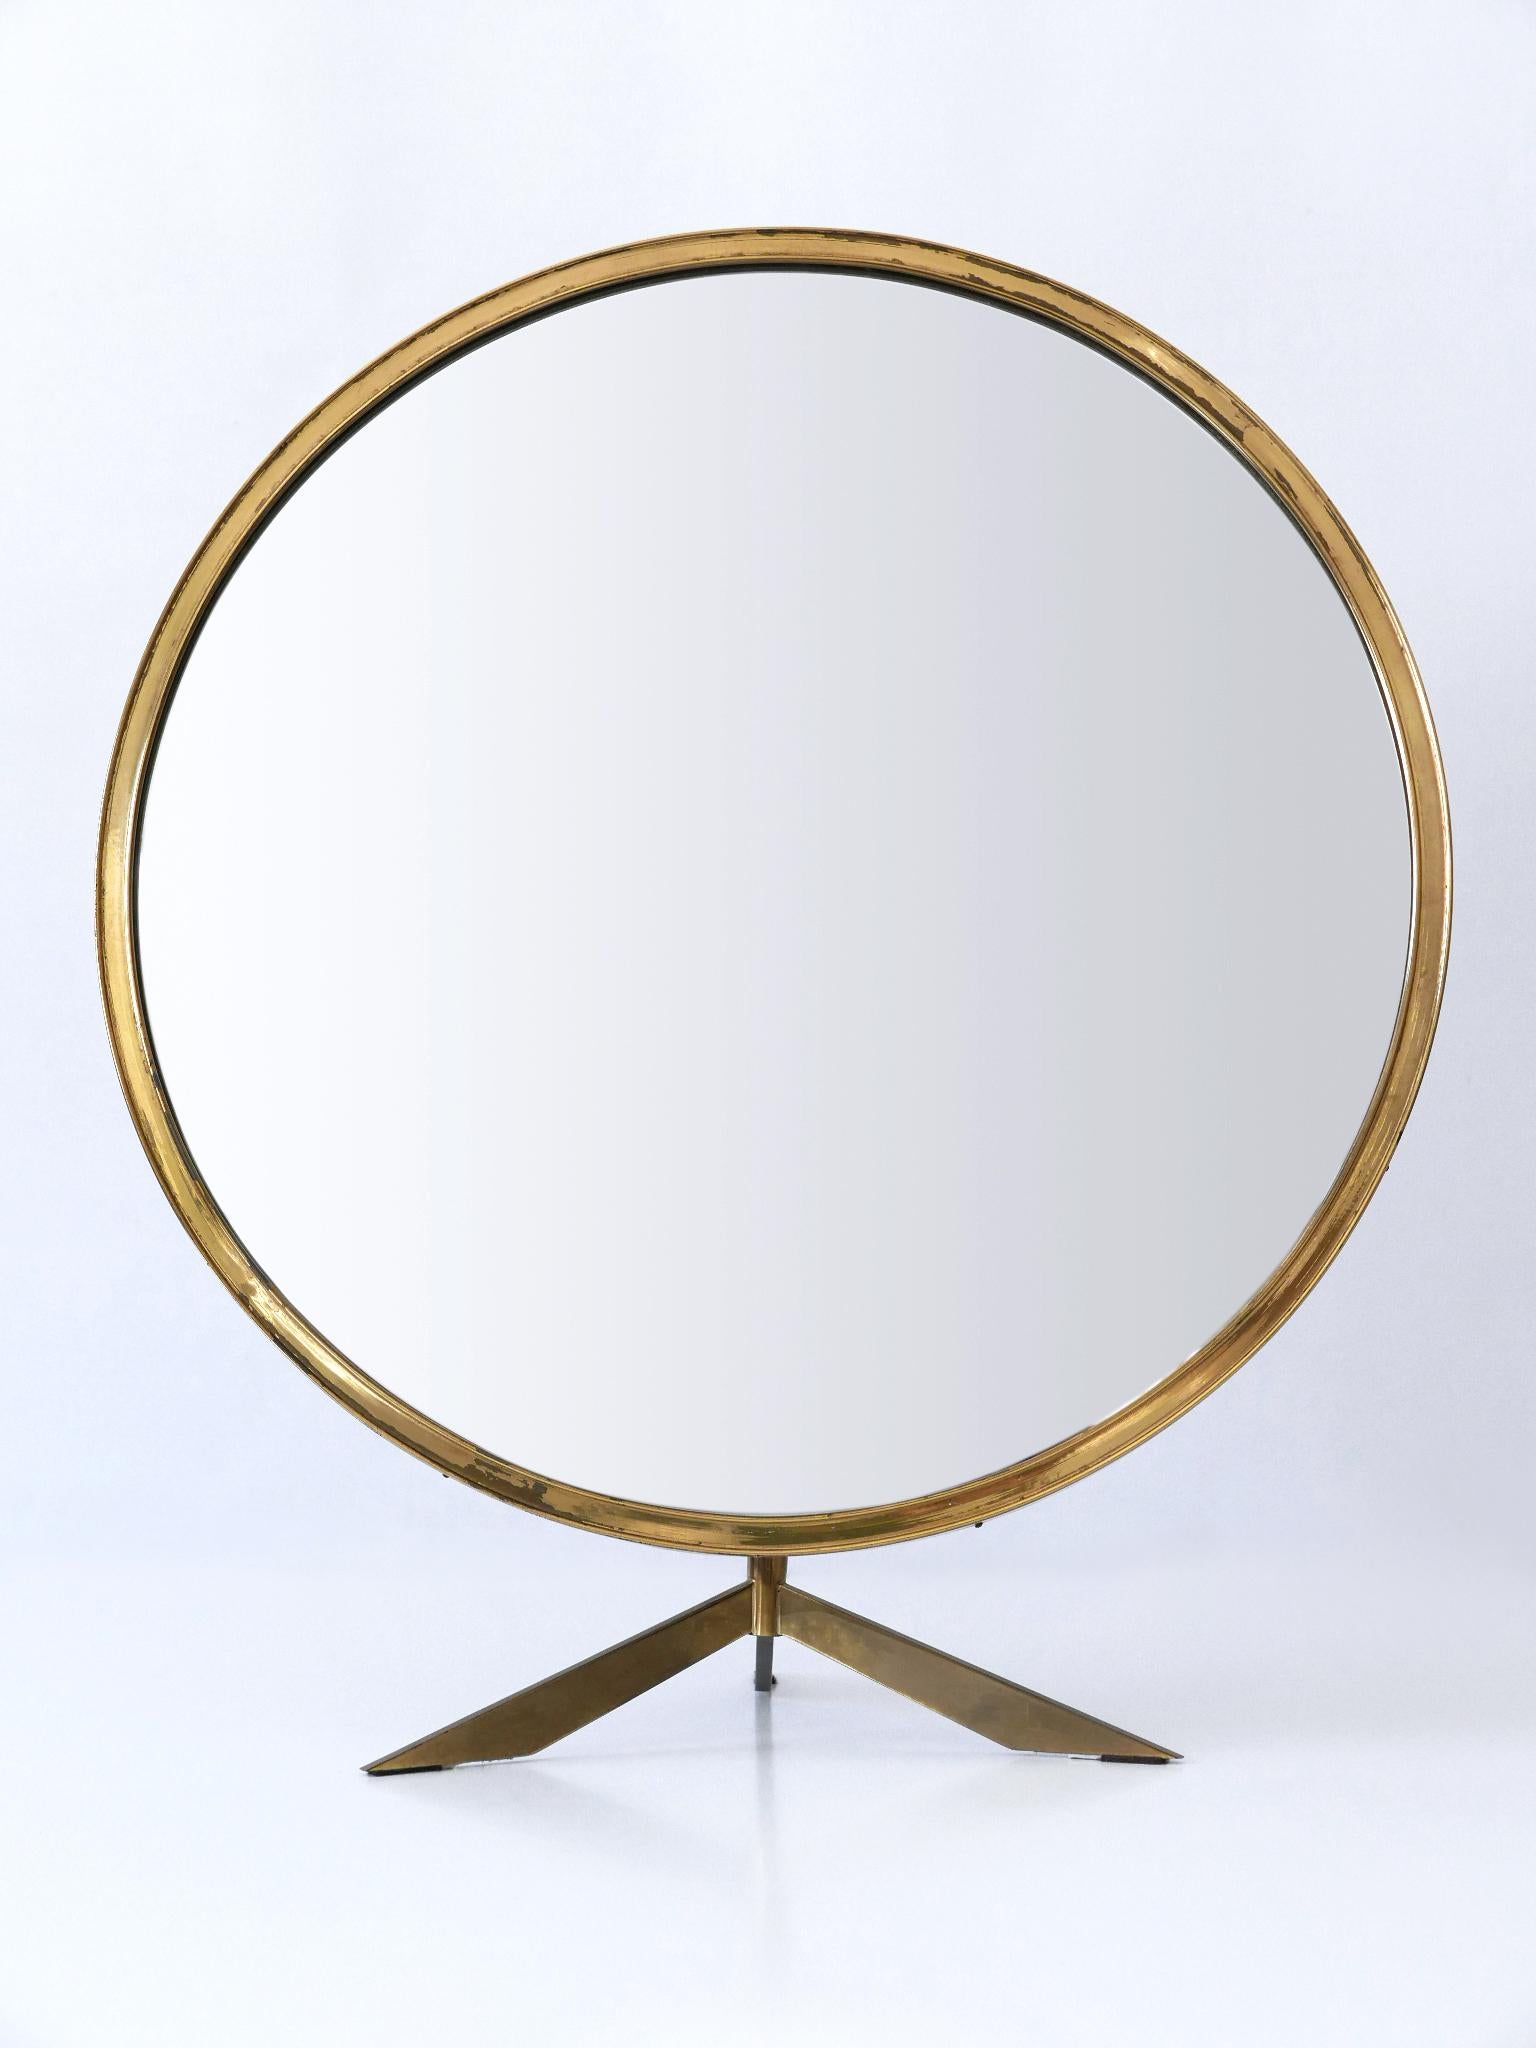 Rare et élégant miroir de table / mural Mid-Century Modern avec un élégant laiton et un pied. Angle réglable en cas d'utilisation comme miroir de table. Fabriqué par Münchner Zierform, Allemagne, années 1950.

Exécuté en verre miroir, laiton et